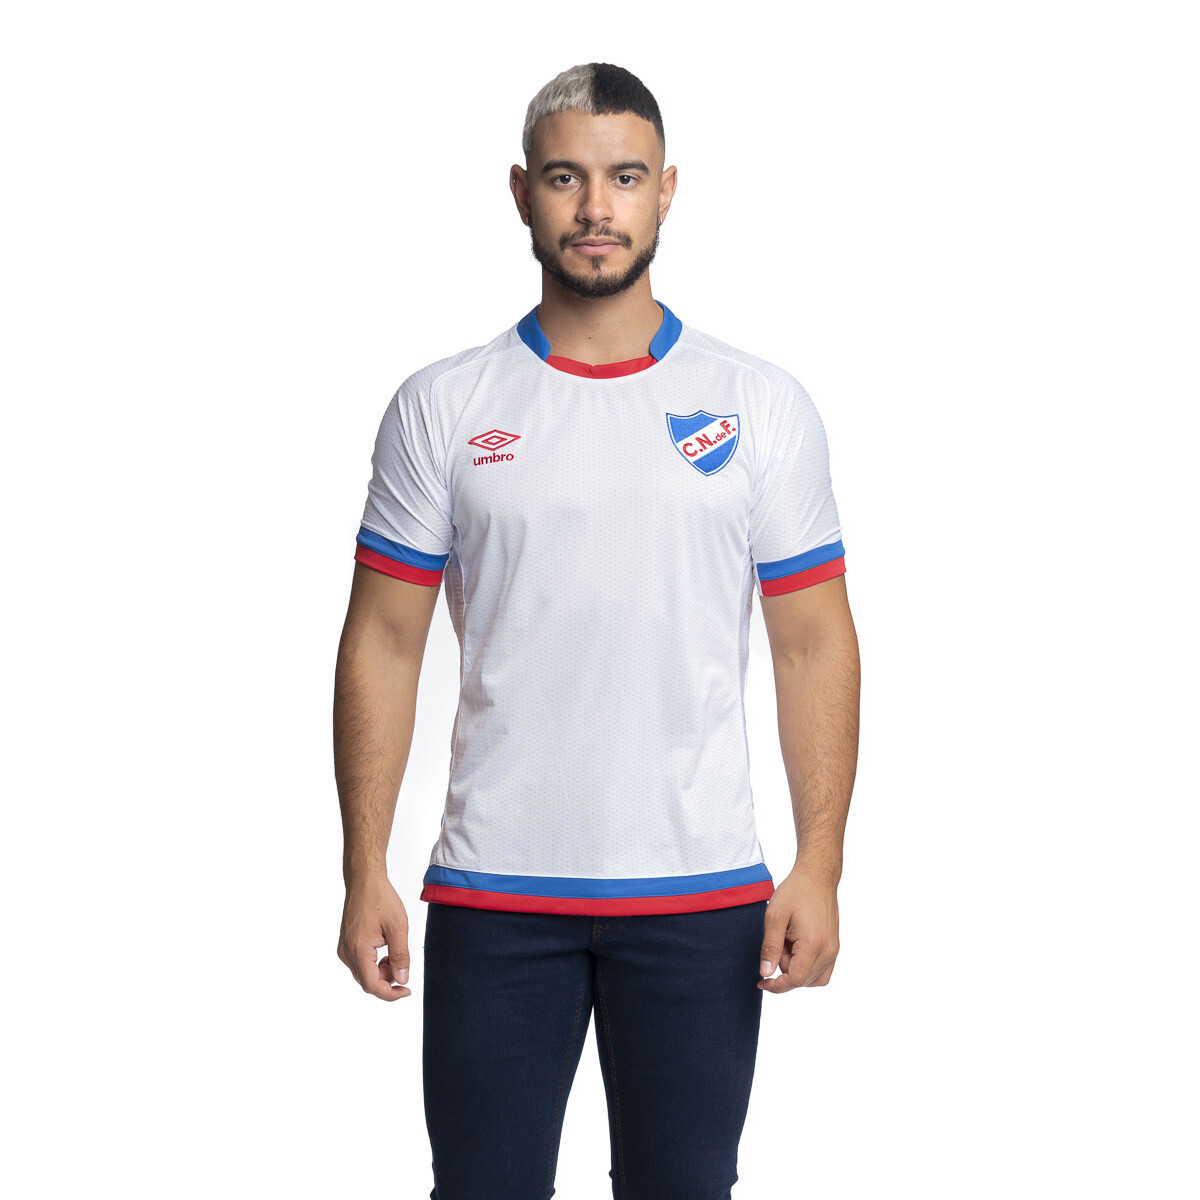 Camiseta Oficial 2018 Umbro Nacional Hombre - 0v4 